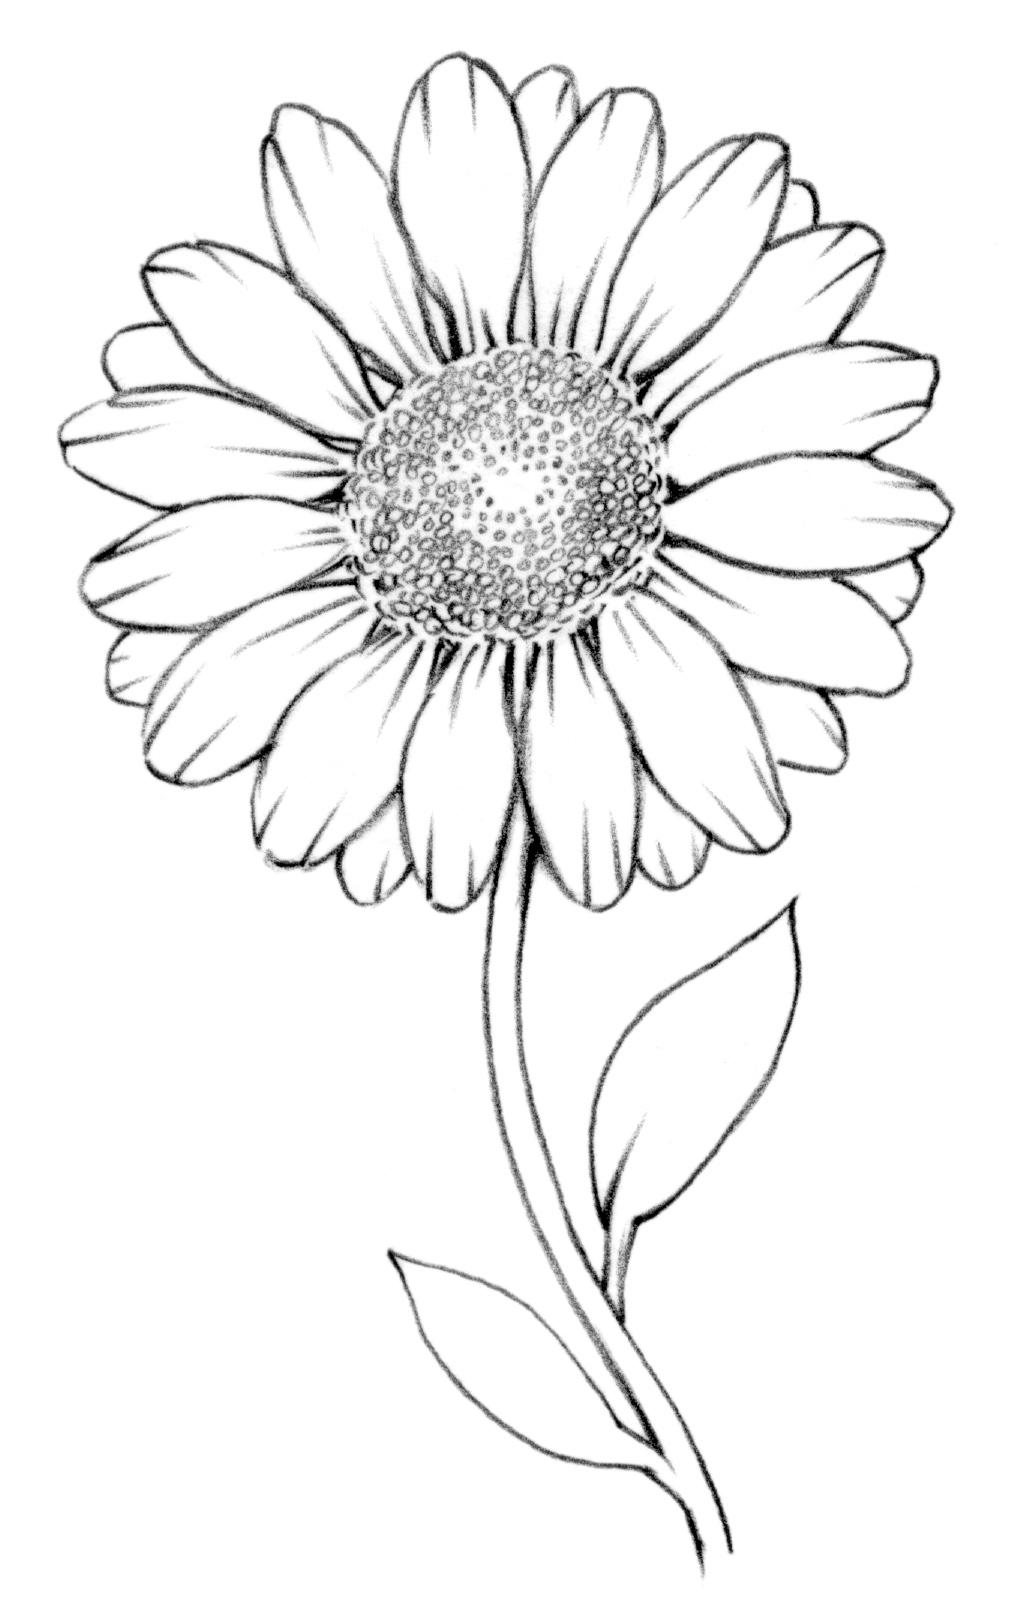 Daisy Flower Drawing Hand drawn Sketch